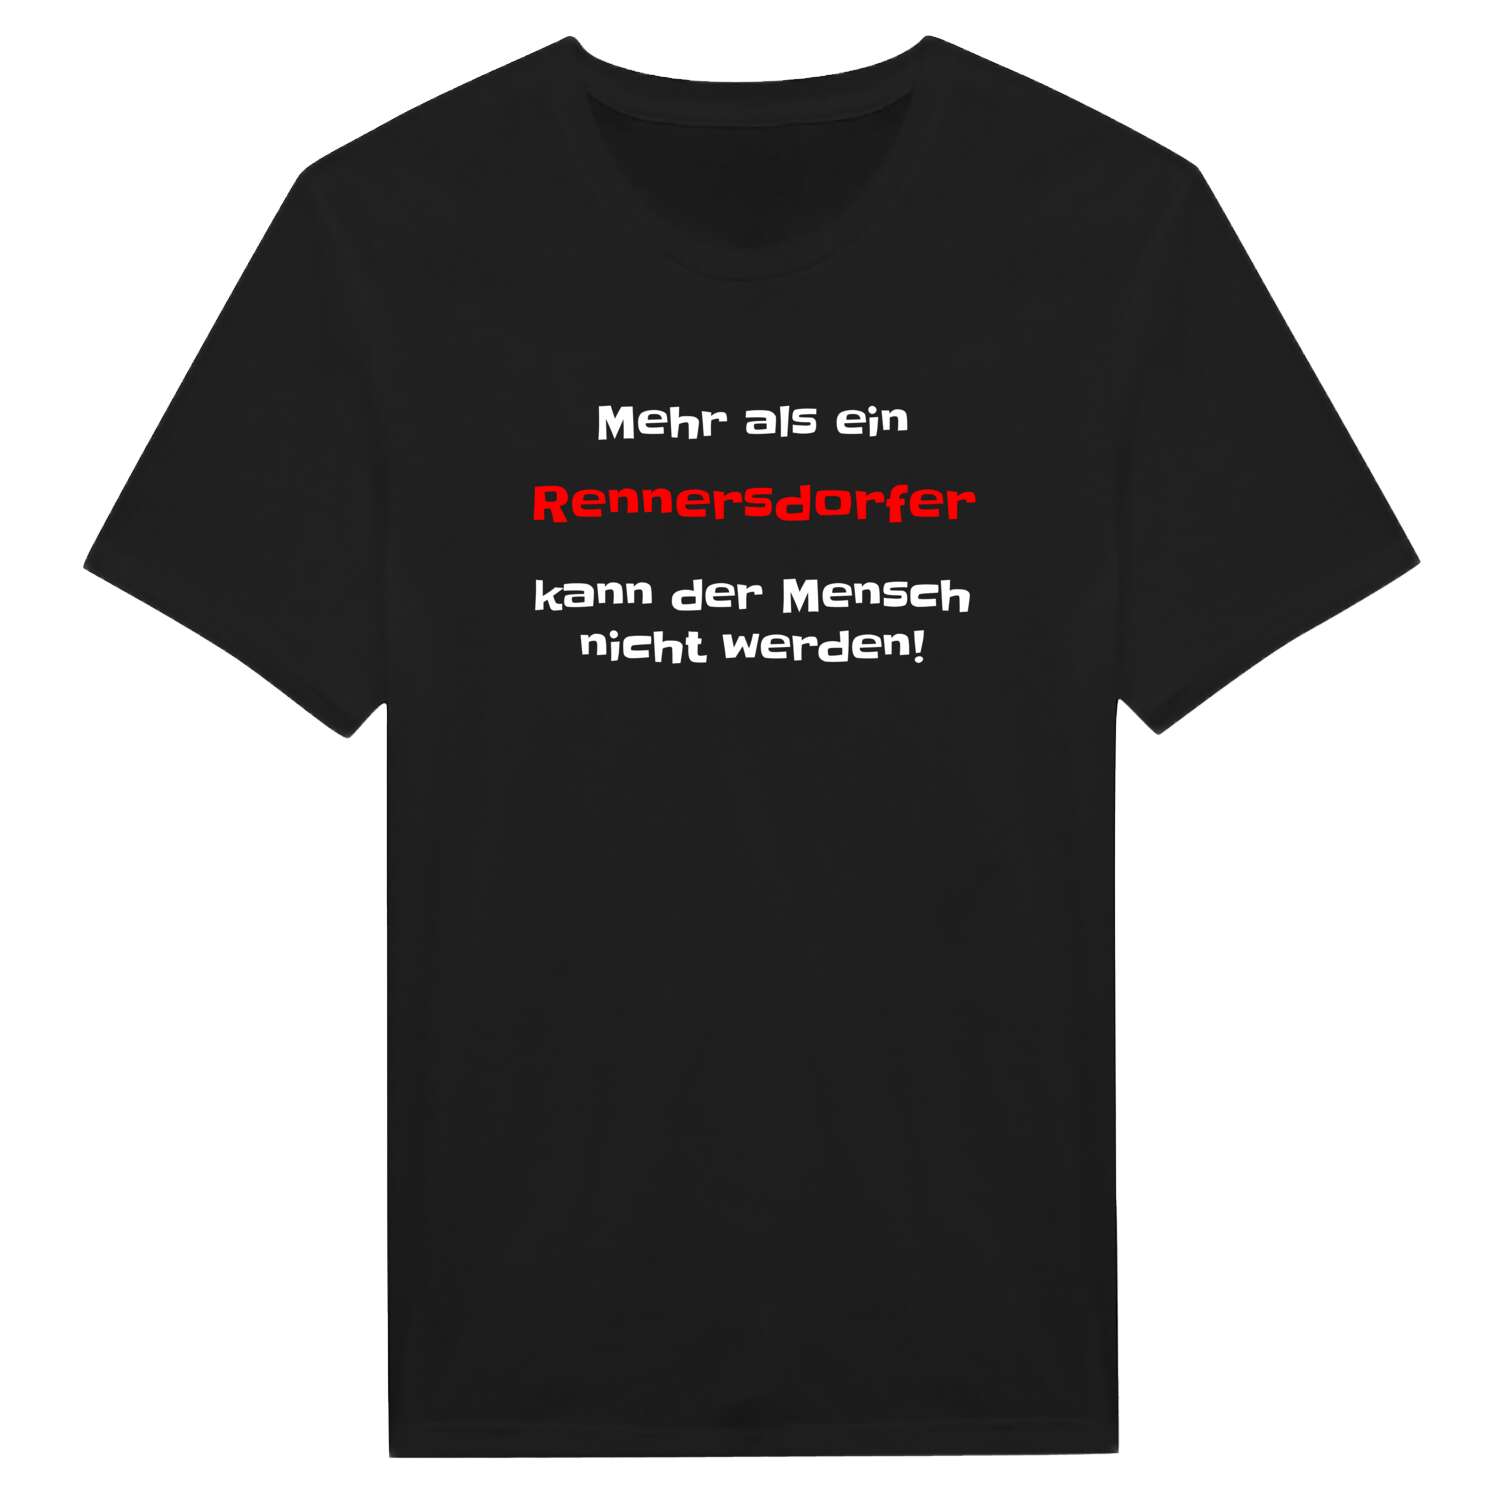 Rennersdorf T-Shirt »Mehr als ein«